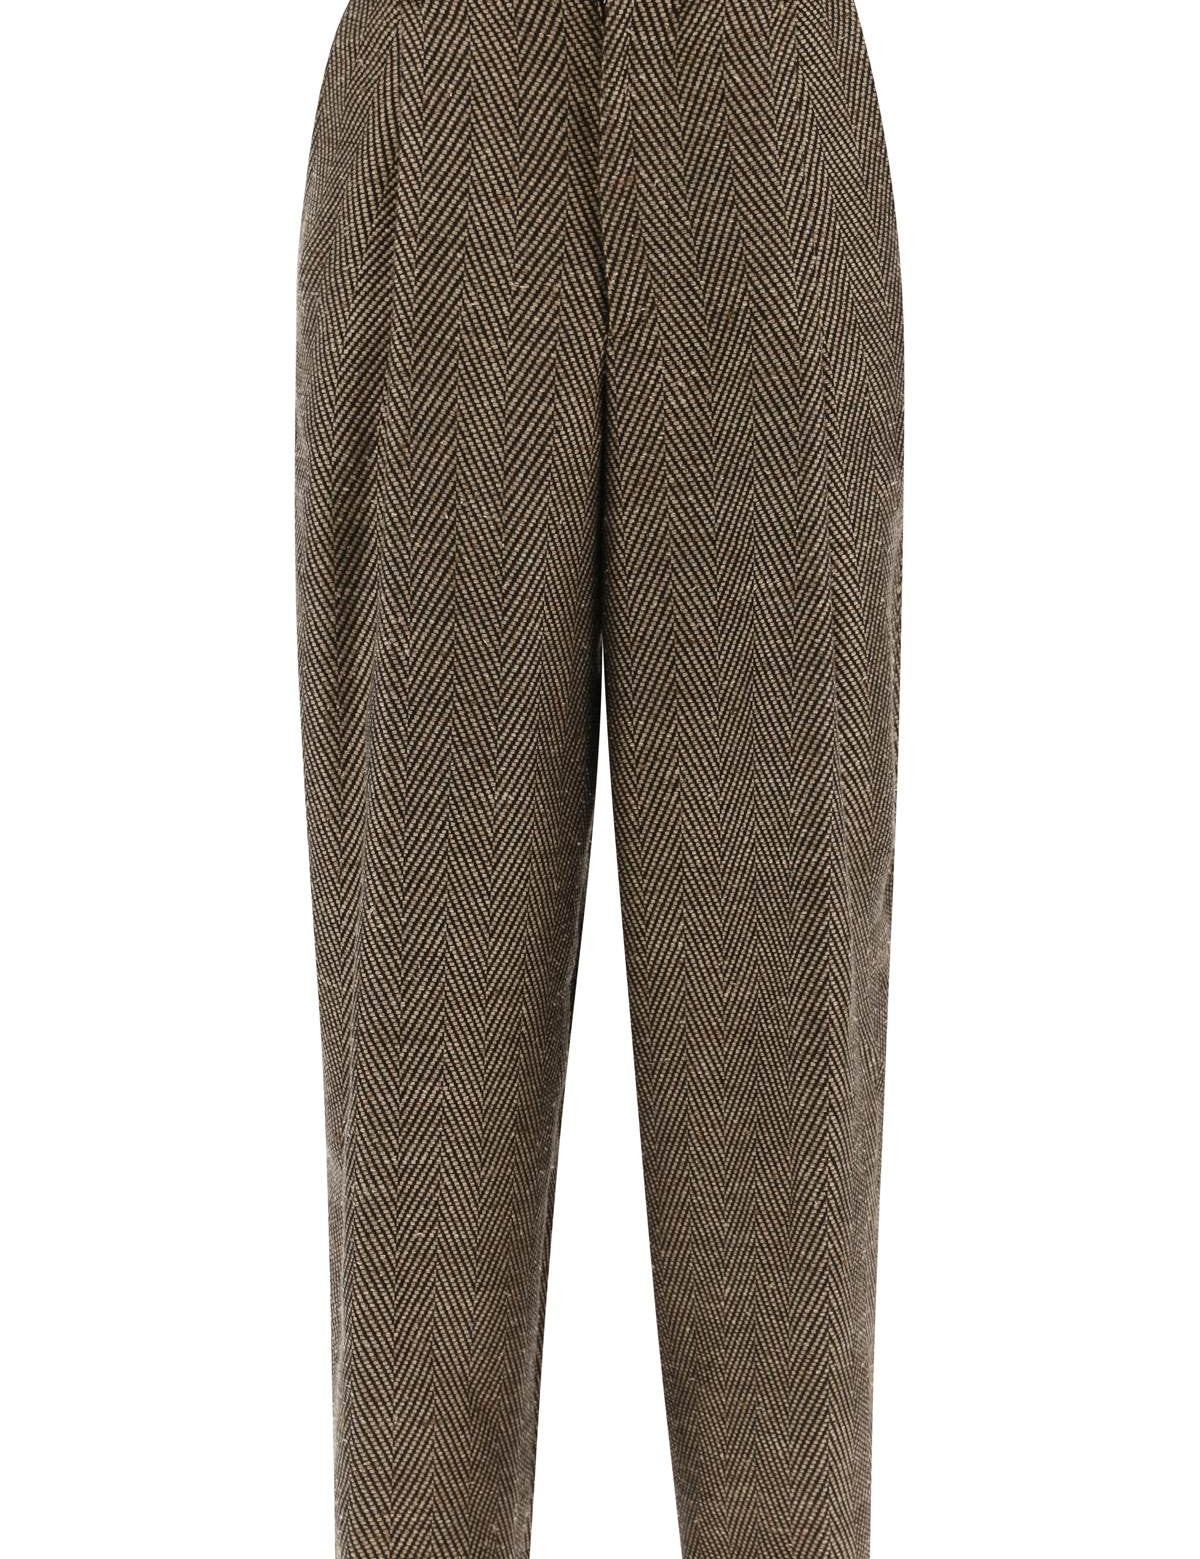 dries-van-noten-spotted-tweed-trousers-for.jpg